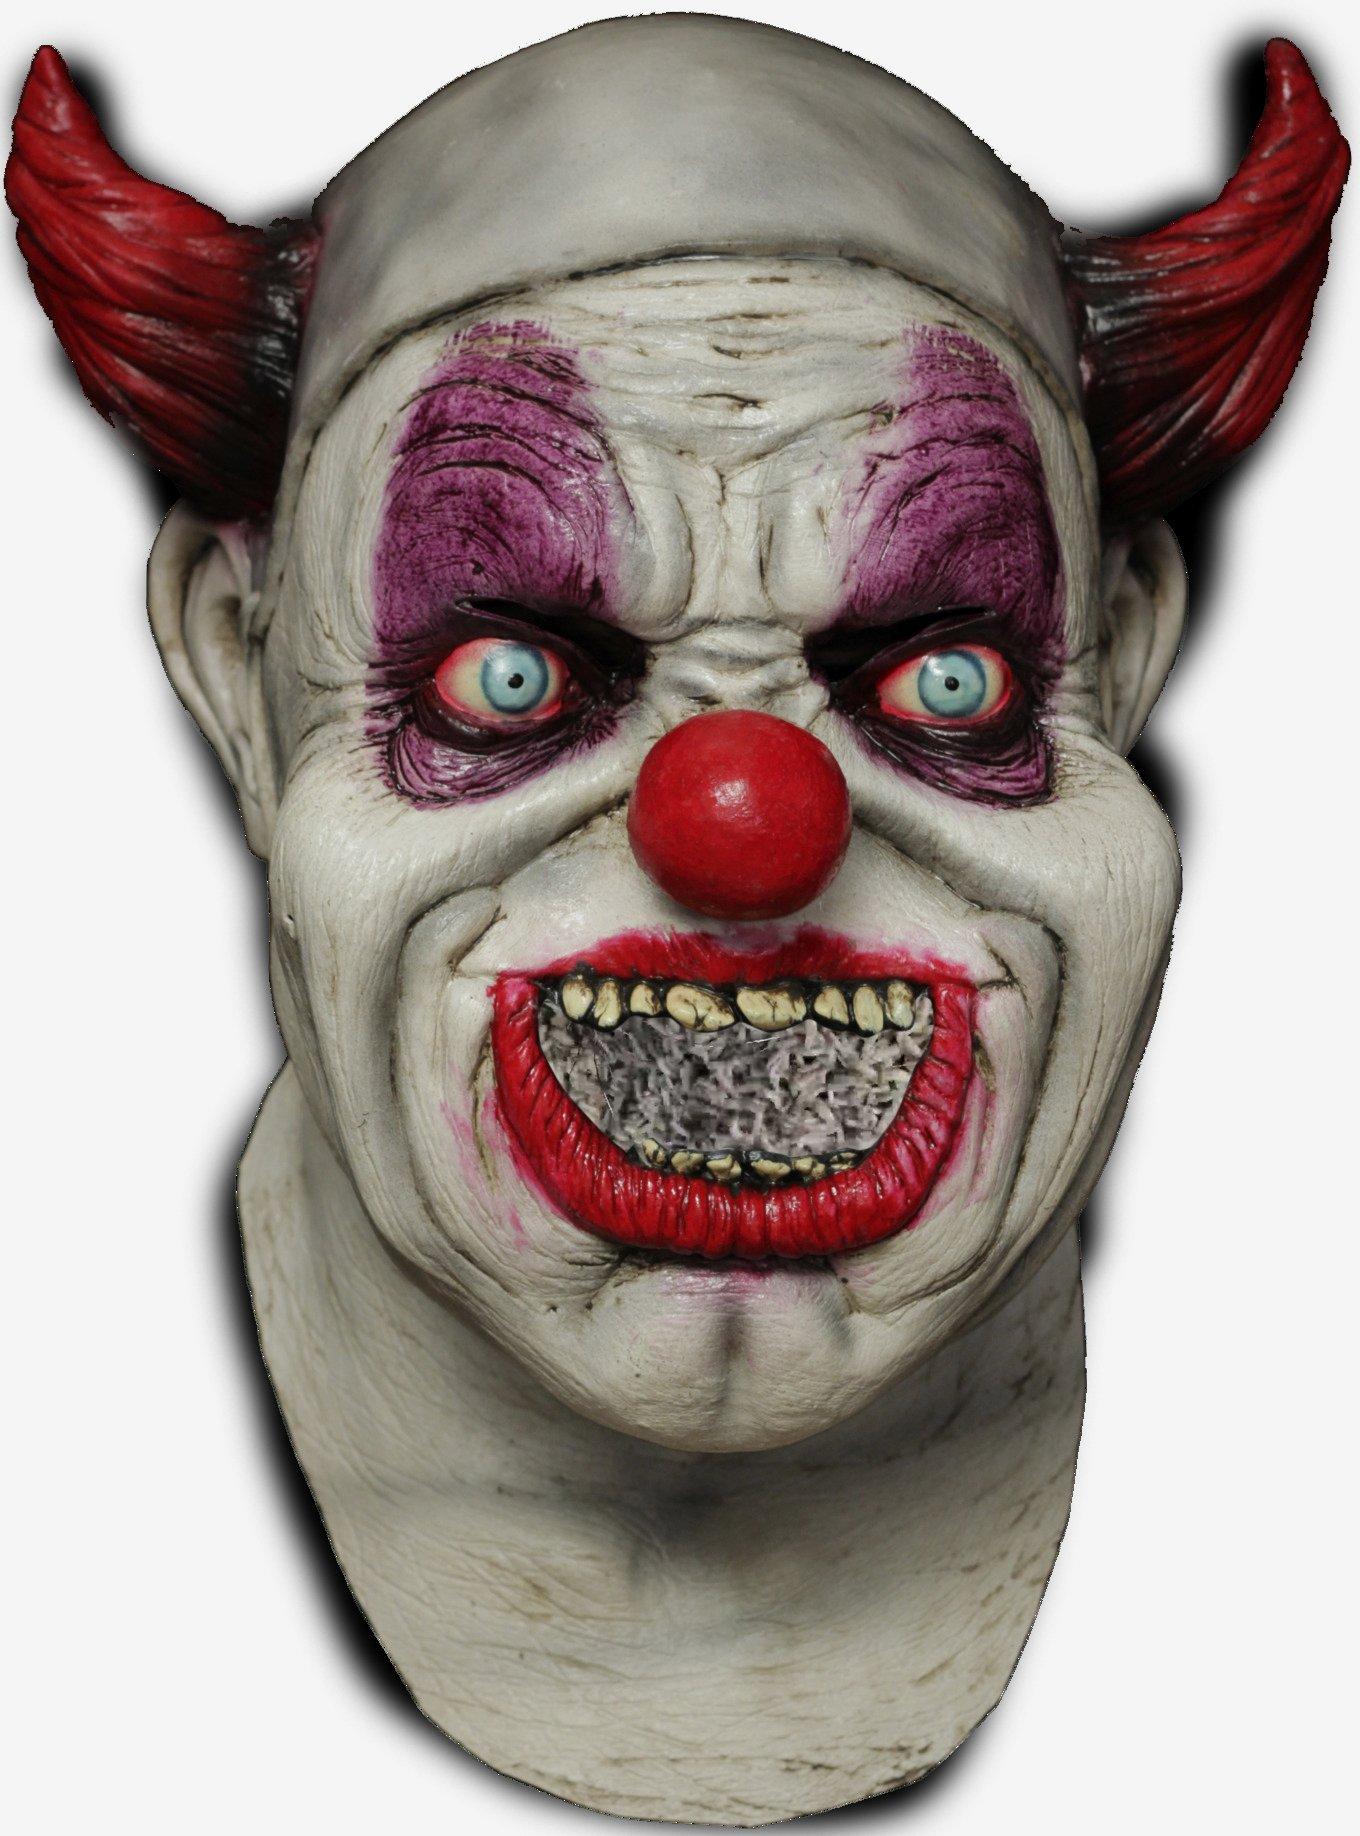 Maggot Clown Mouth Mask